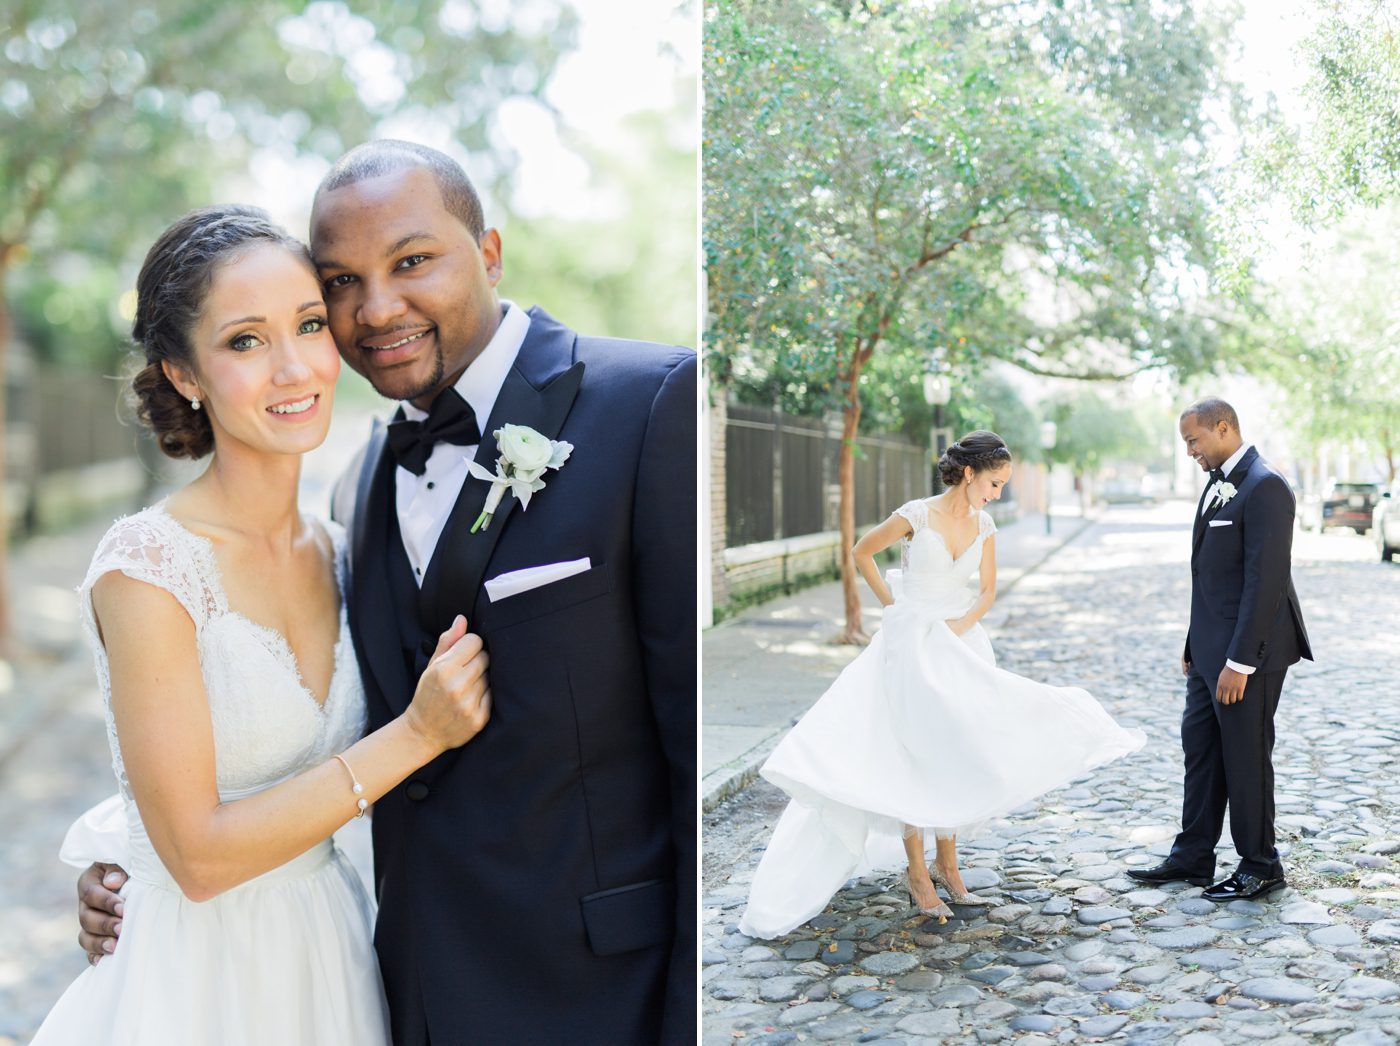 Chalmers Street wedding photos in Charleston | Elegant William Aiken House Wedding Photos | Charleston SC wedding photographers Catherine Ann Photography